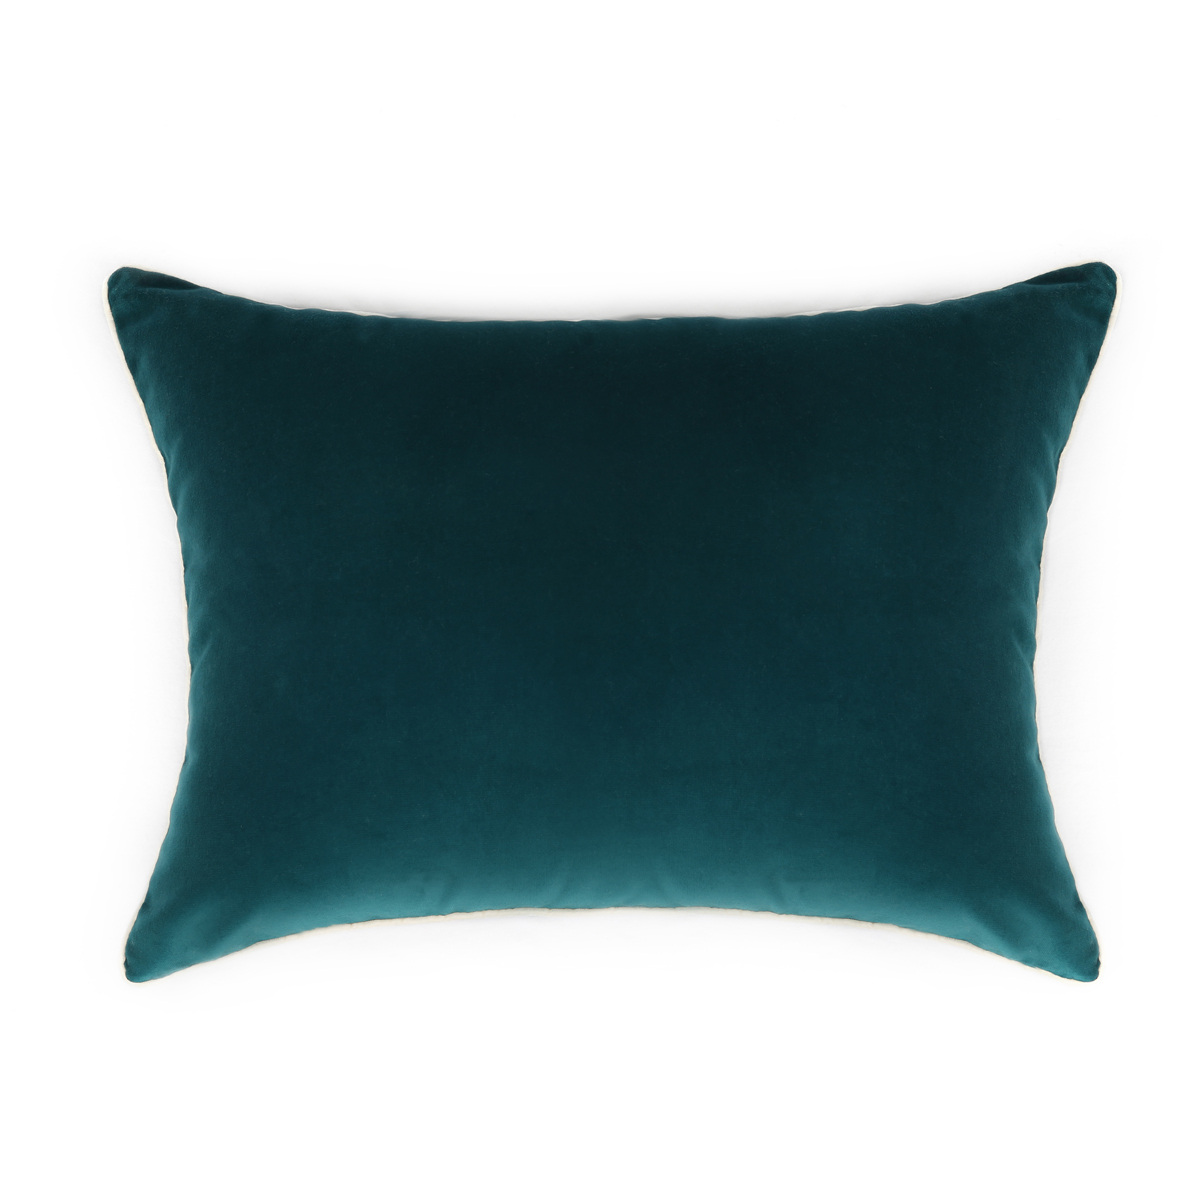 Cushion Double Jeu, Blue / Black Radish - 55 x 40 cm - Cotton velvet - image 1